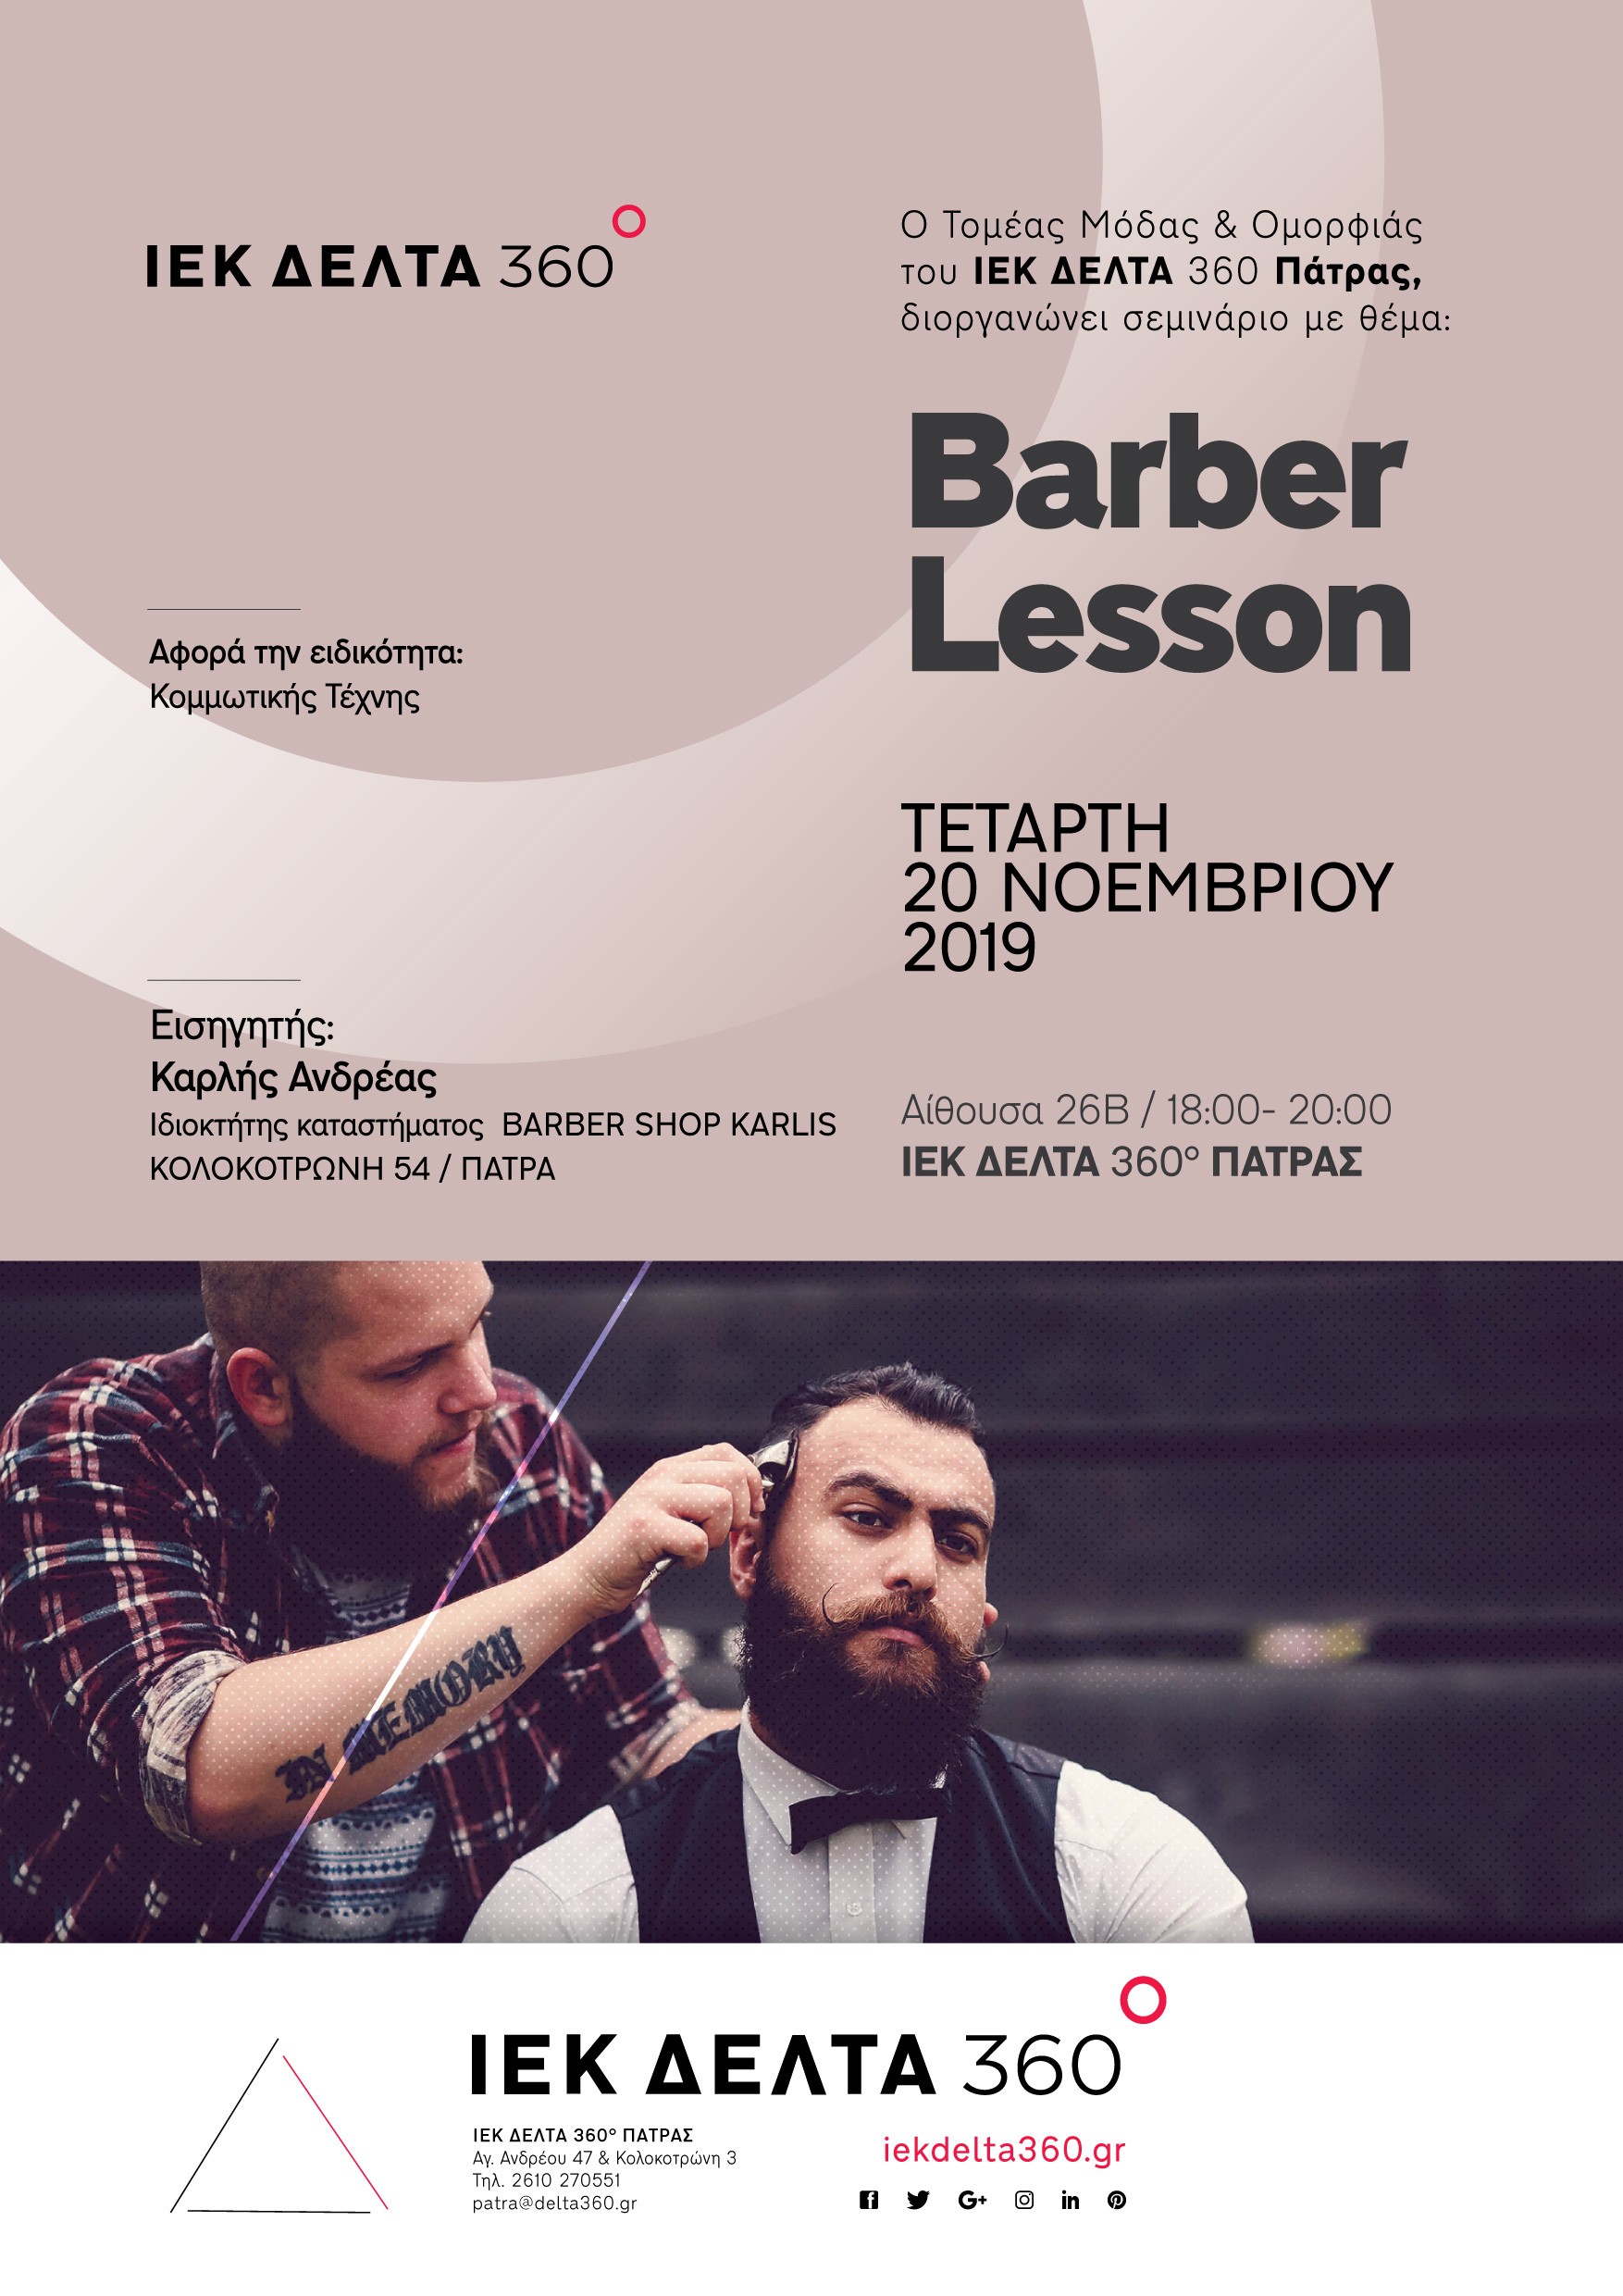 pat-barber-lesson-01.jpg